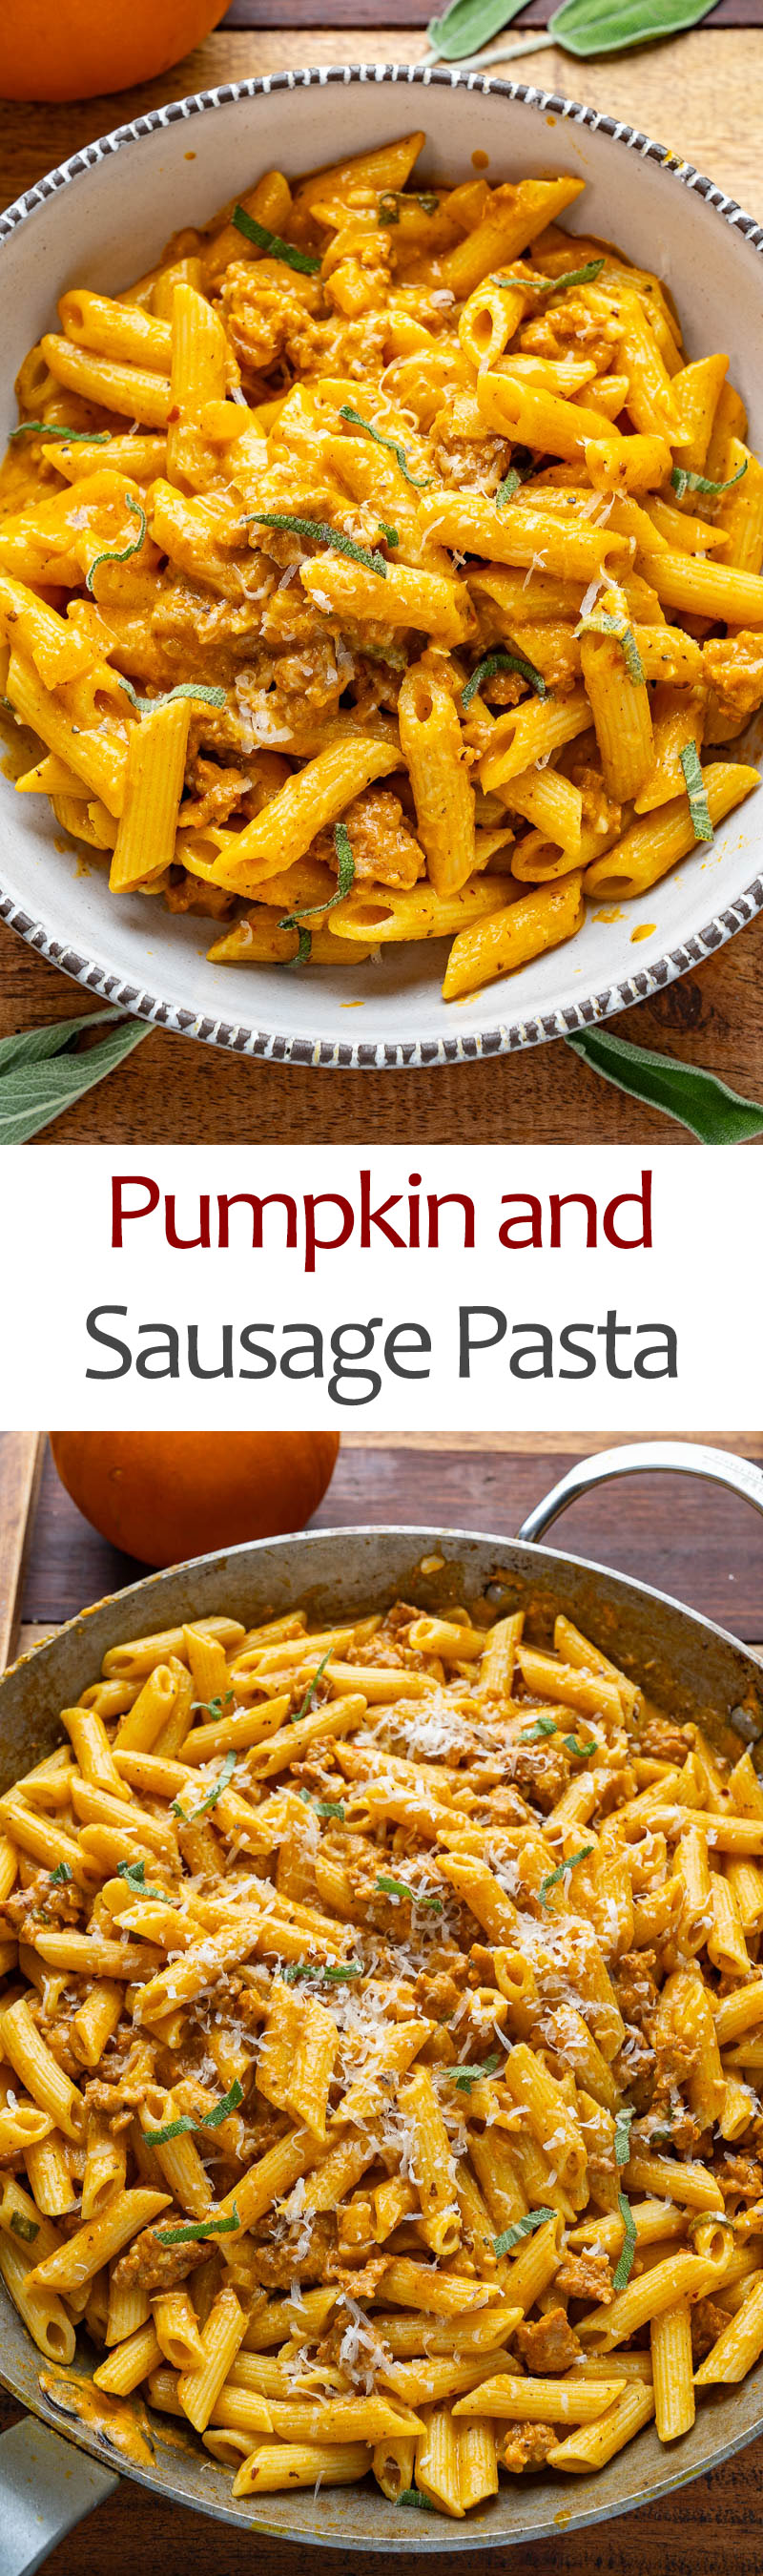 Pumpkin and Sausage Pasta